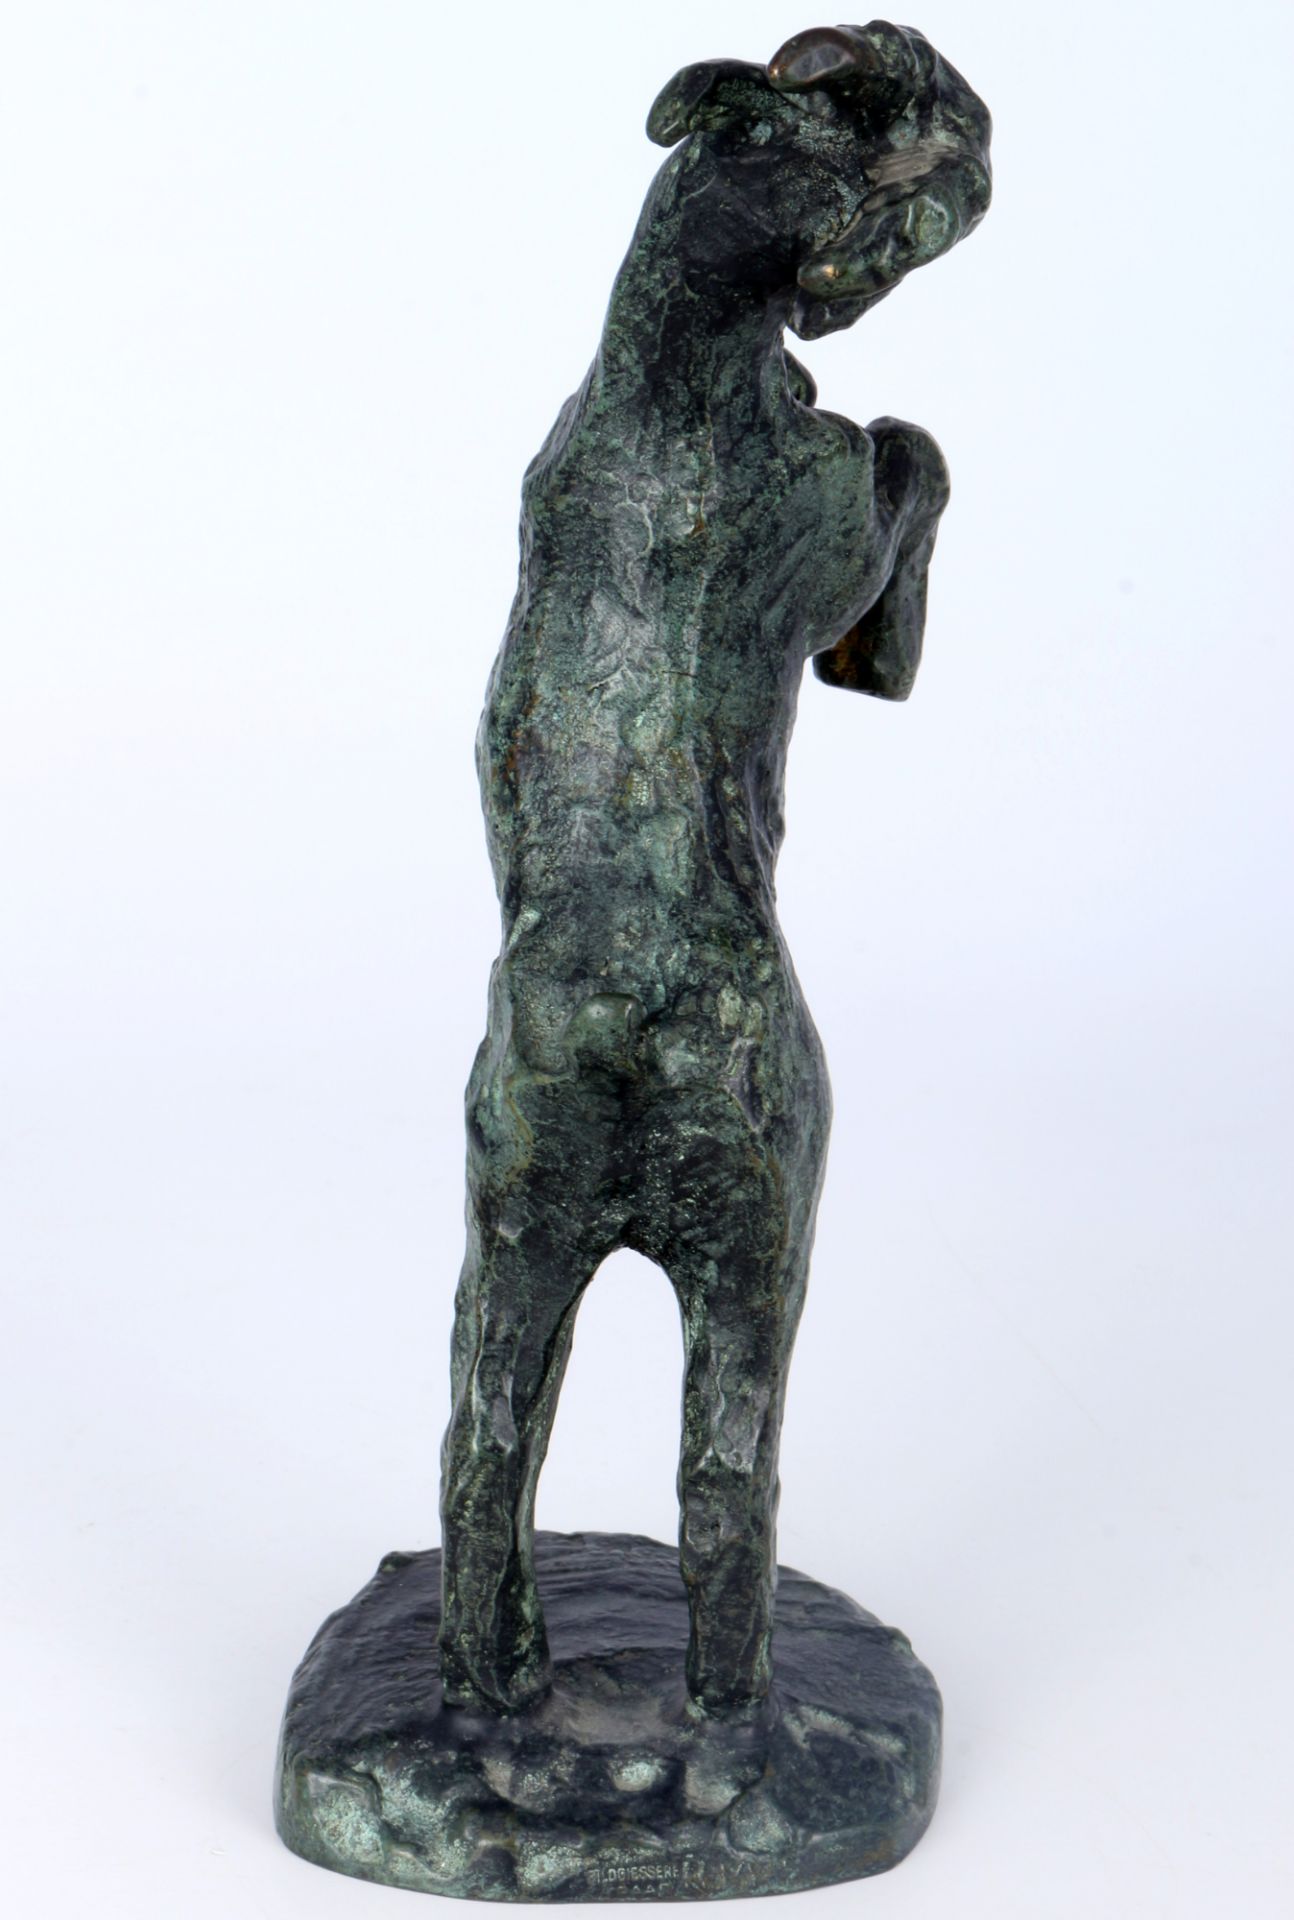 Rose Maria Stiller (1920 - 1993) Bronze aufsteigender Ziegenbock, bronze raising goat, - Image 4 of 6